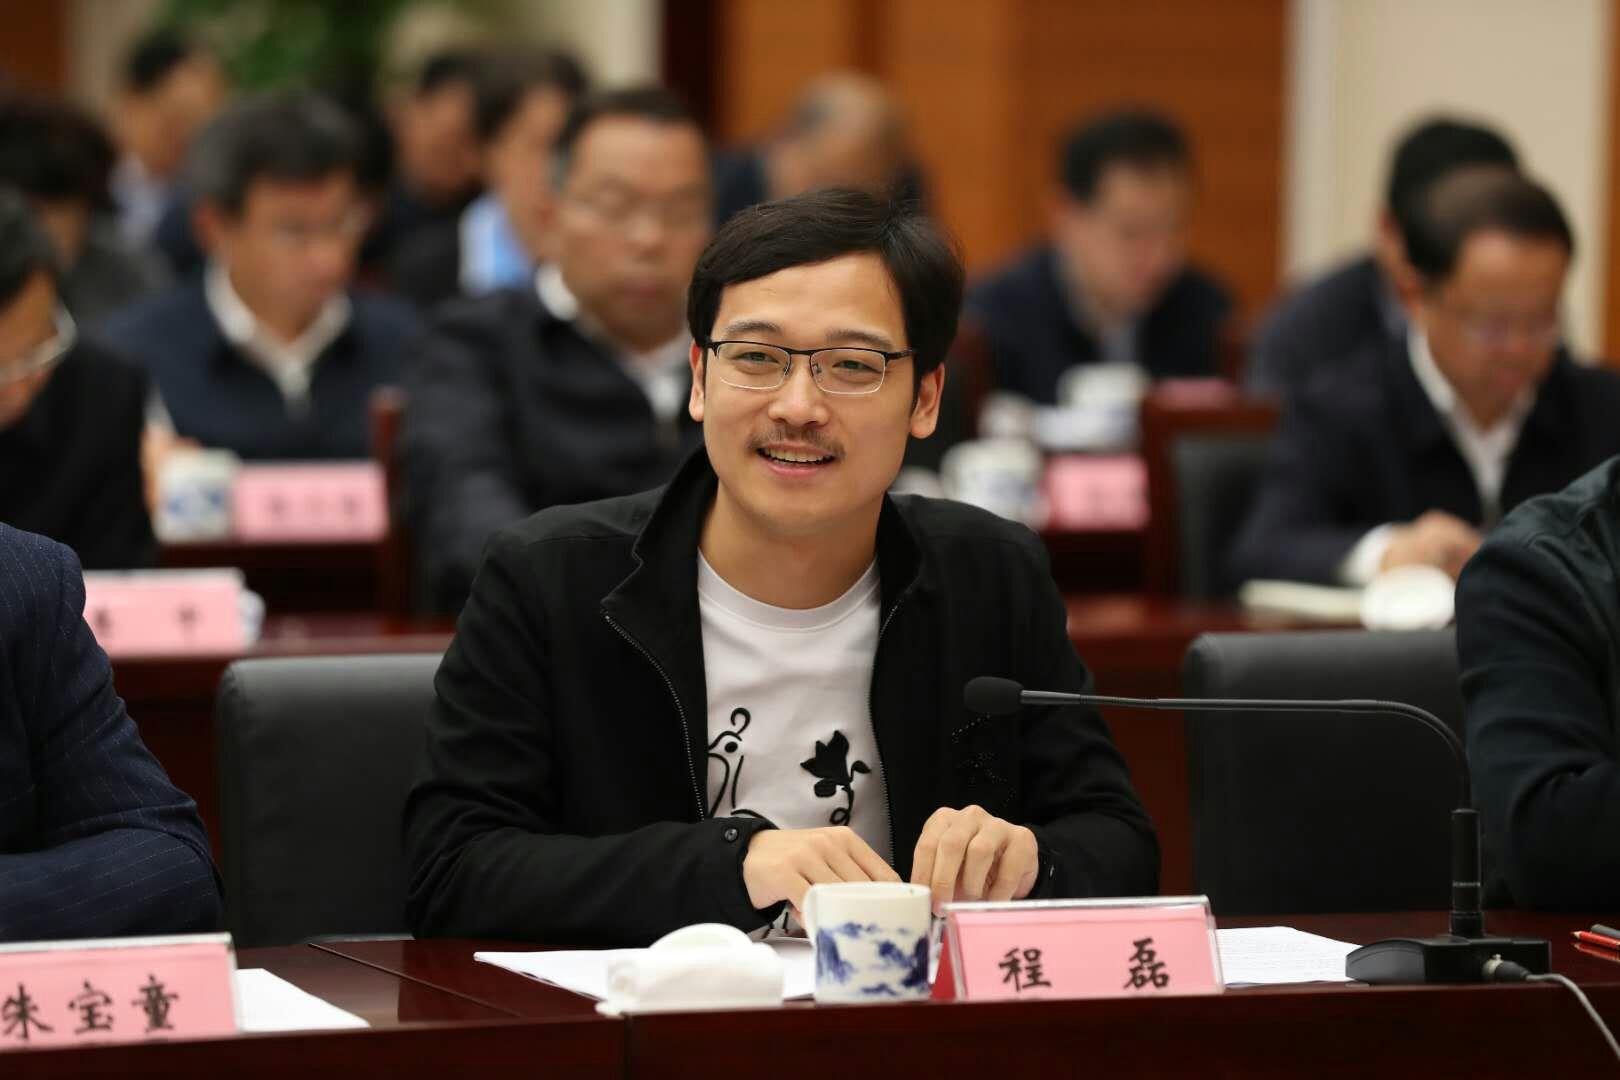 百助CEO程磊受邀参加省民营企业家座谈会并发言